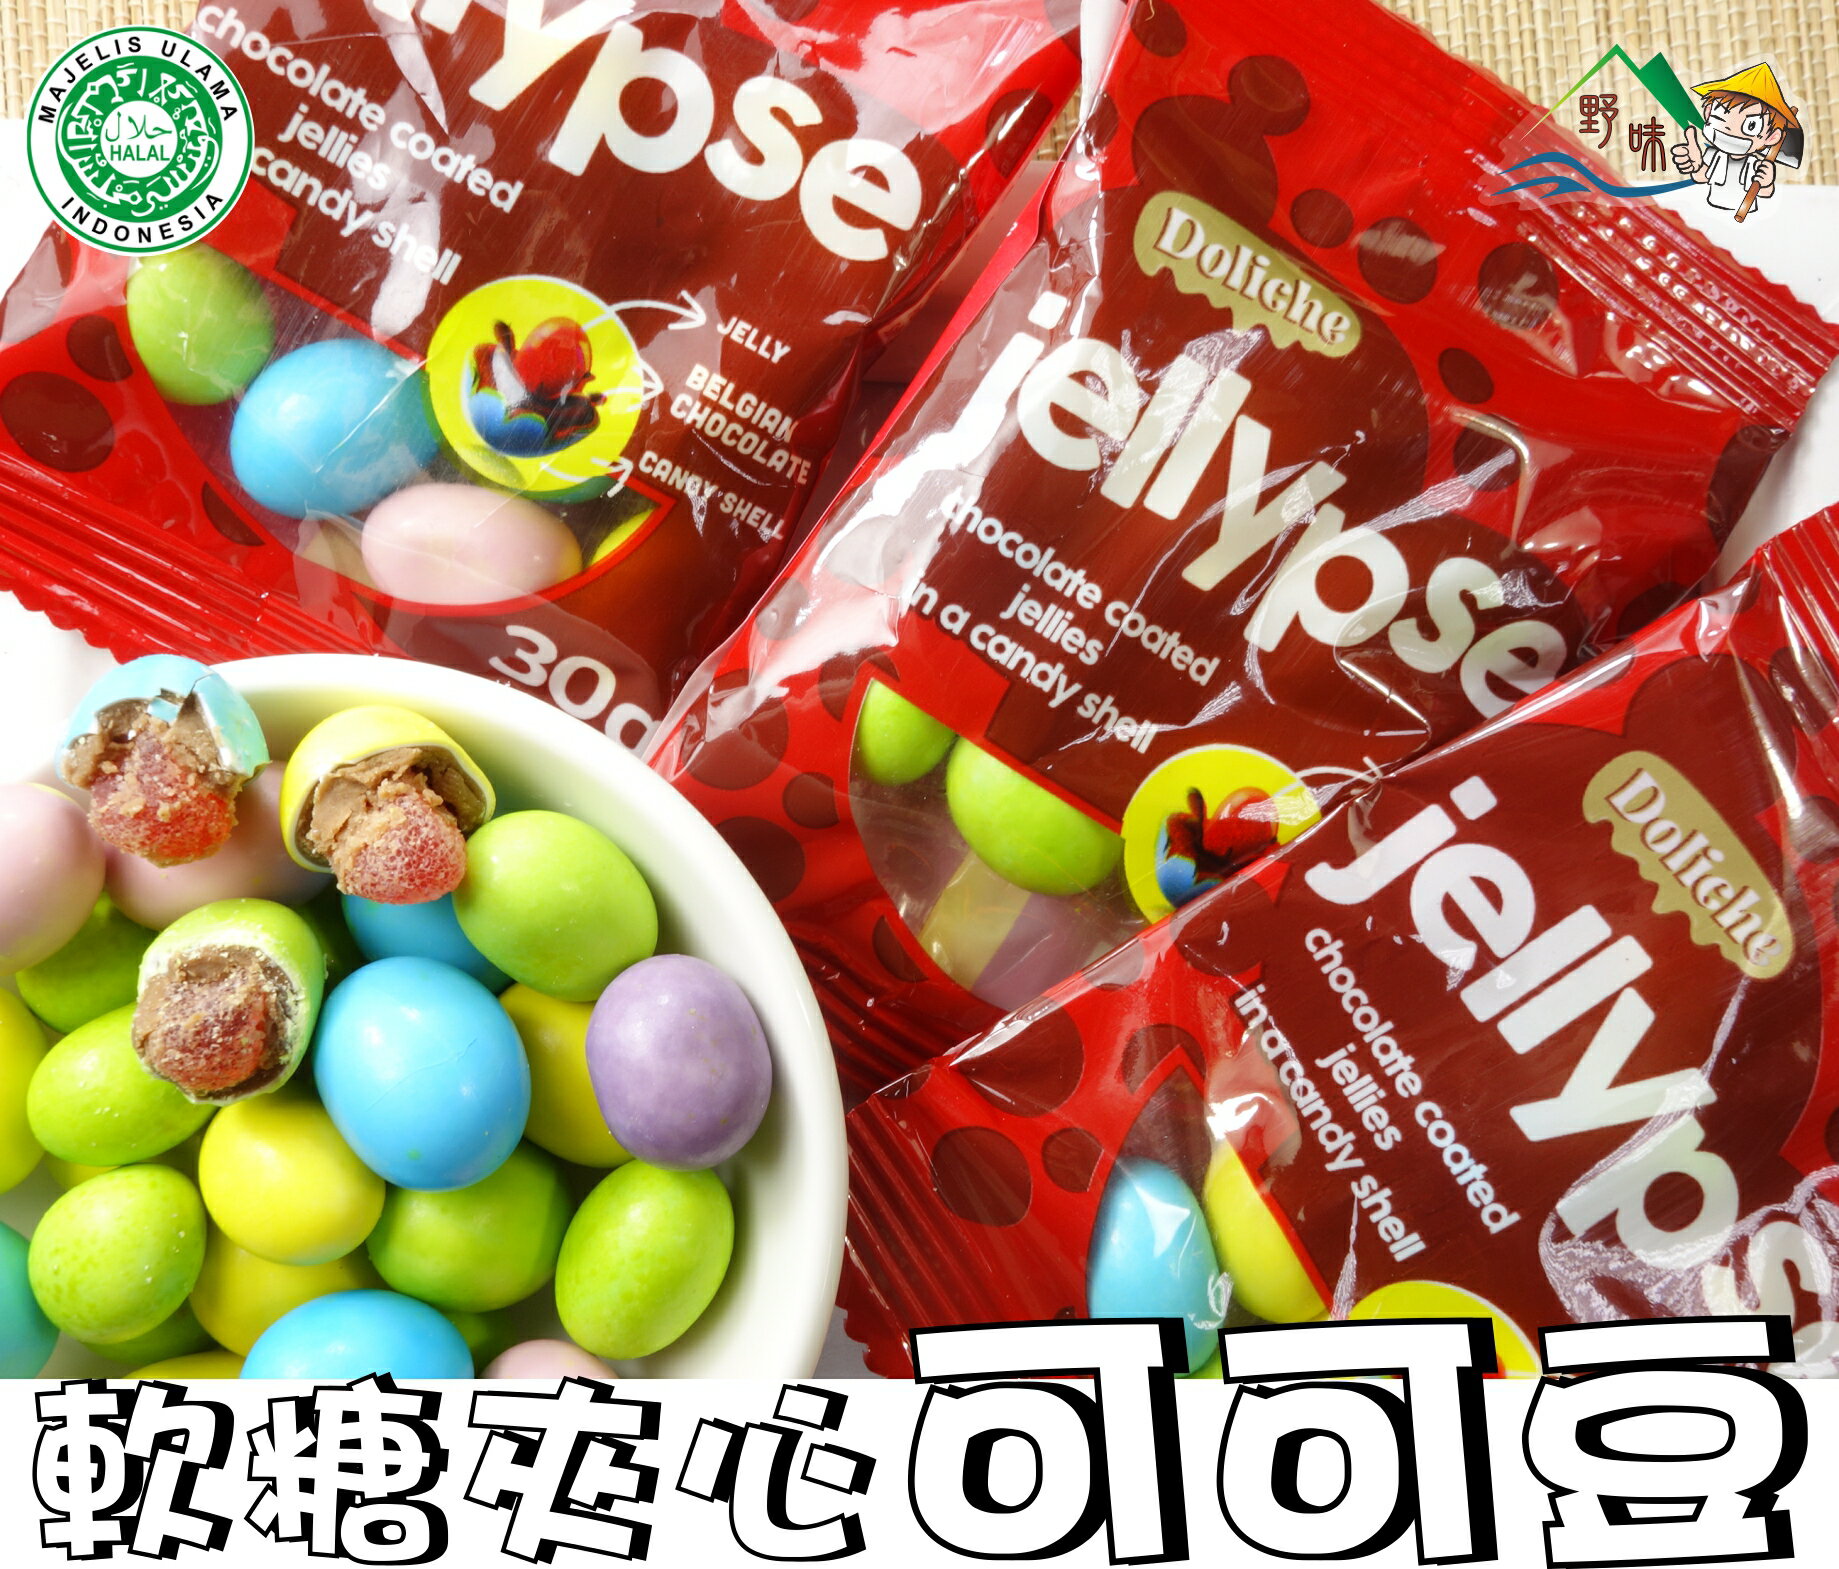 【野味食品】jellypse 可可快樂豆(30g/包,軟糖夾心可可豆,清真食品,桃園實體店面)可可豆/可可球/巧克力豆